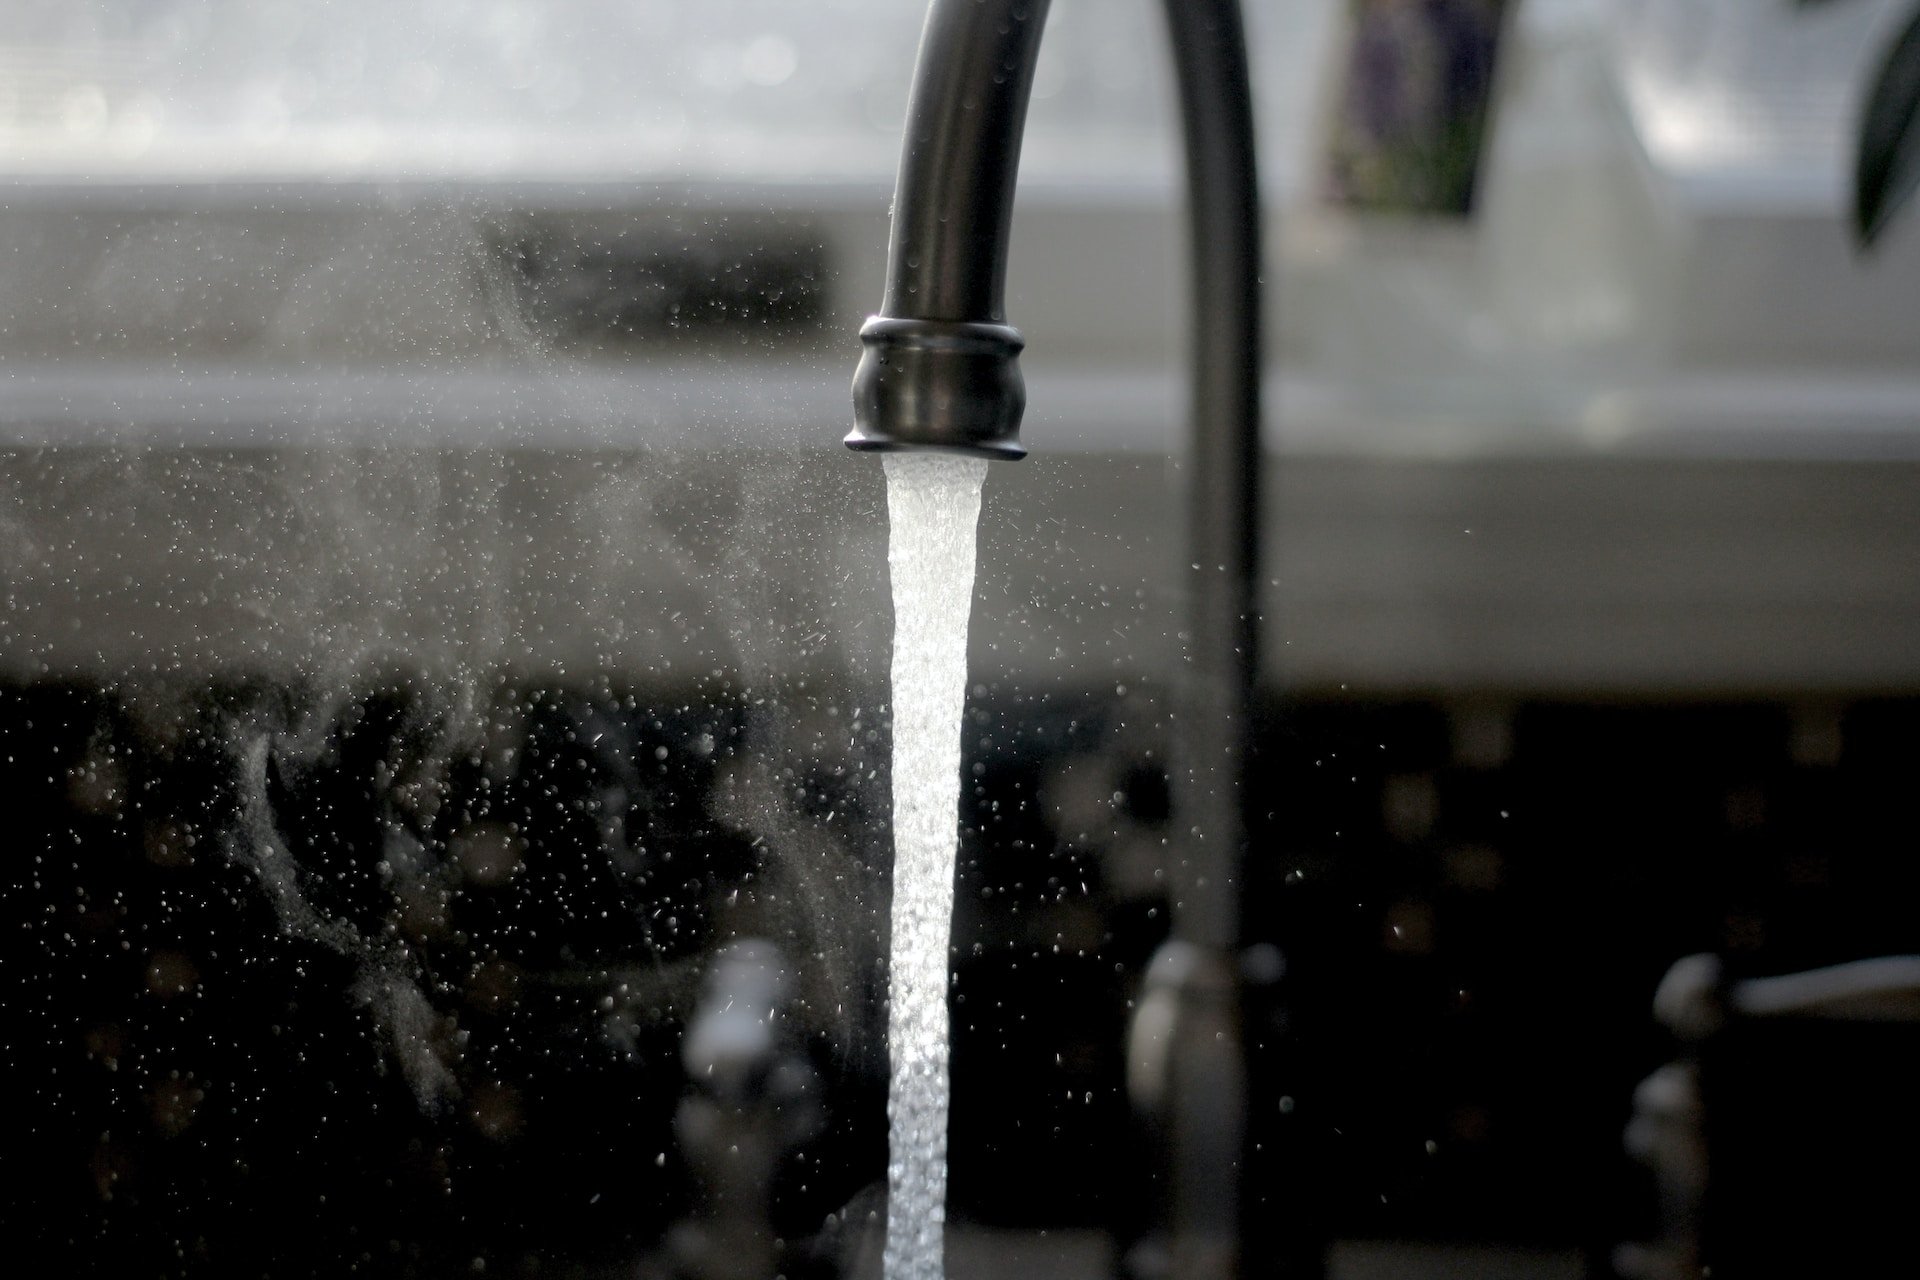 Специалисты проверили качество воды в домах жителей Удмуртии